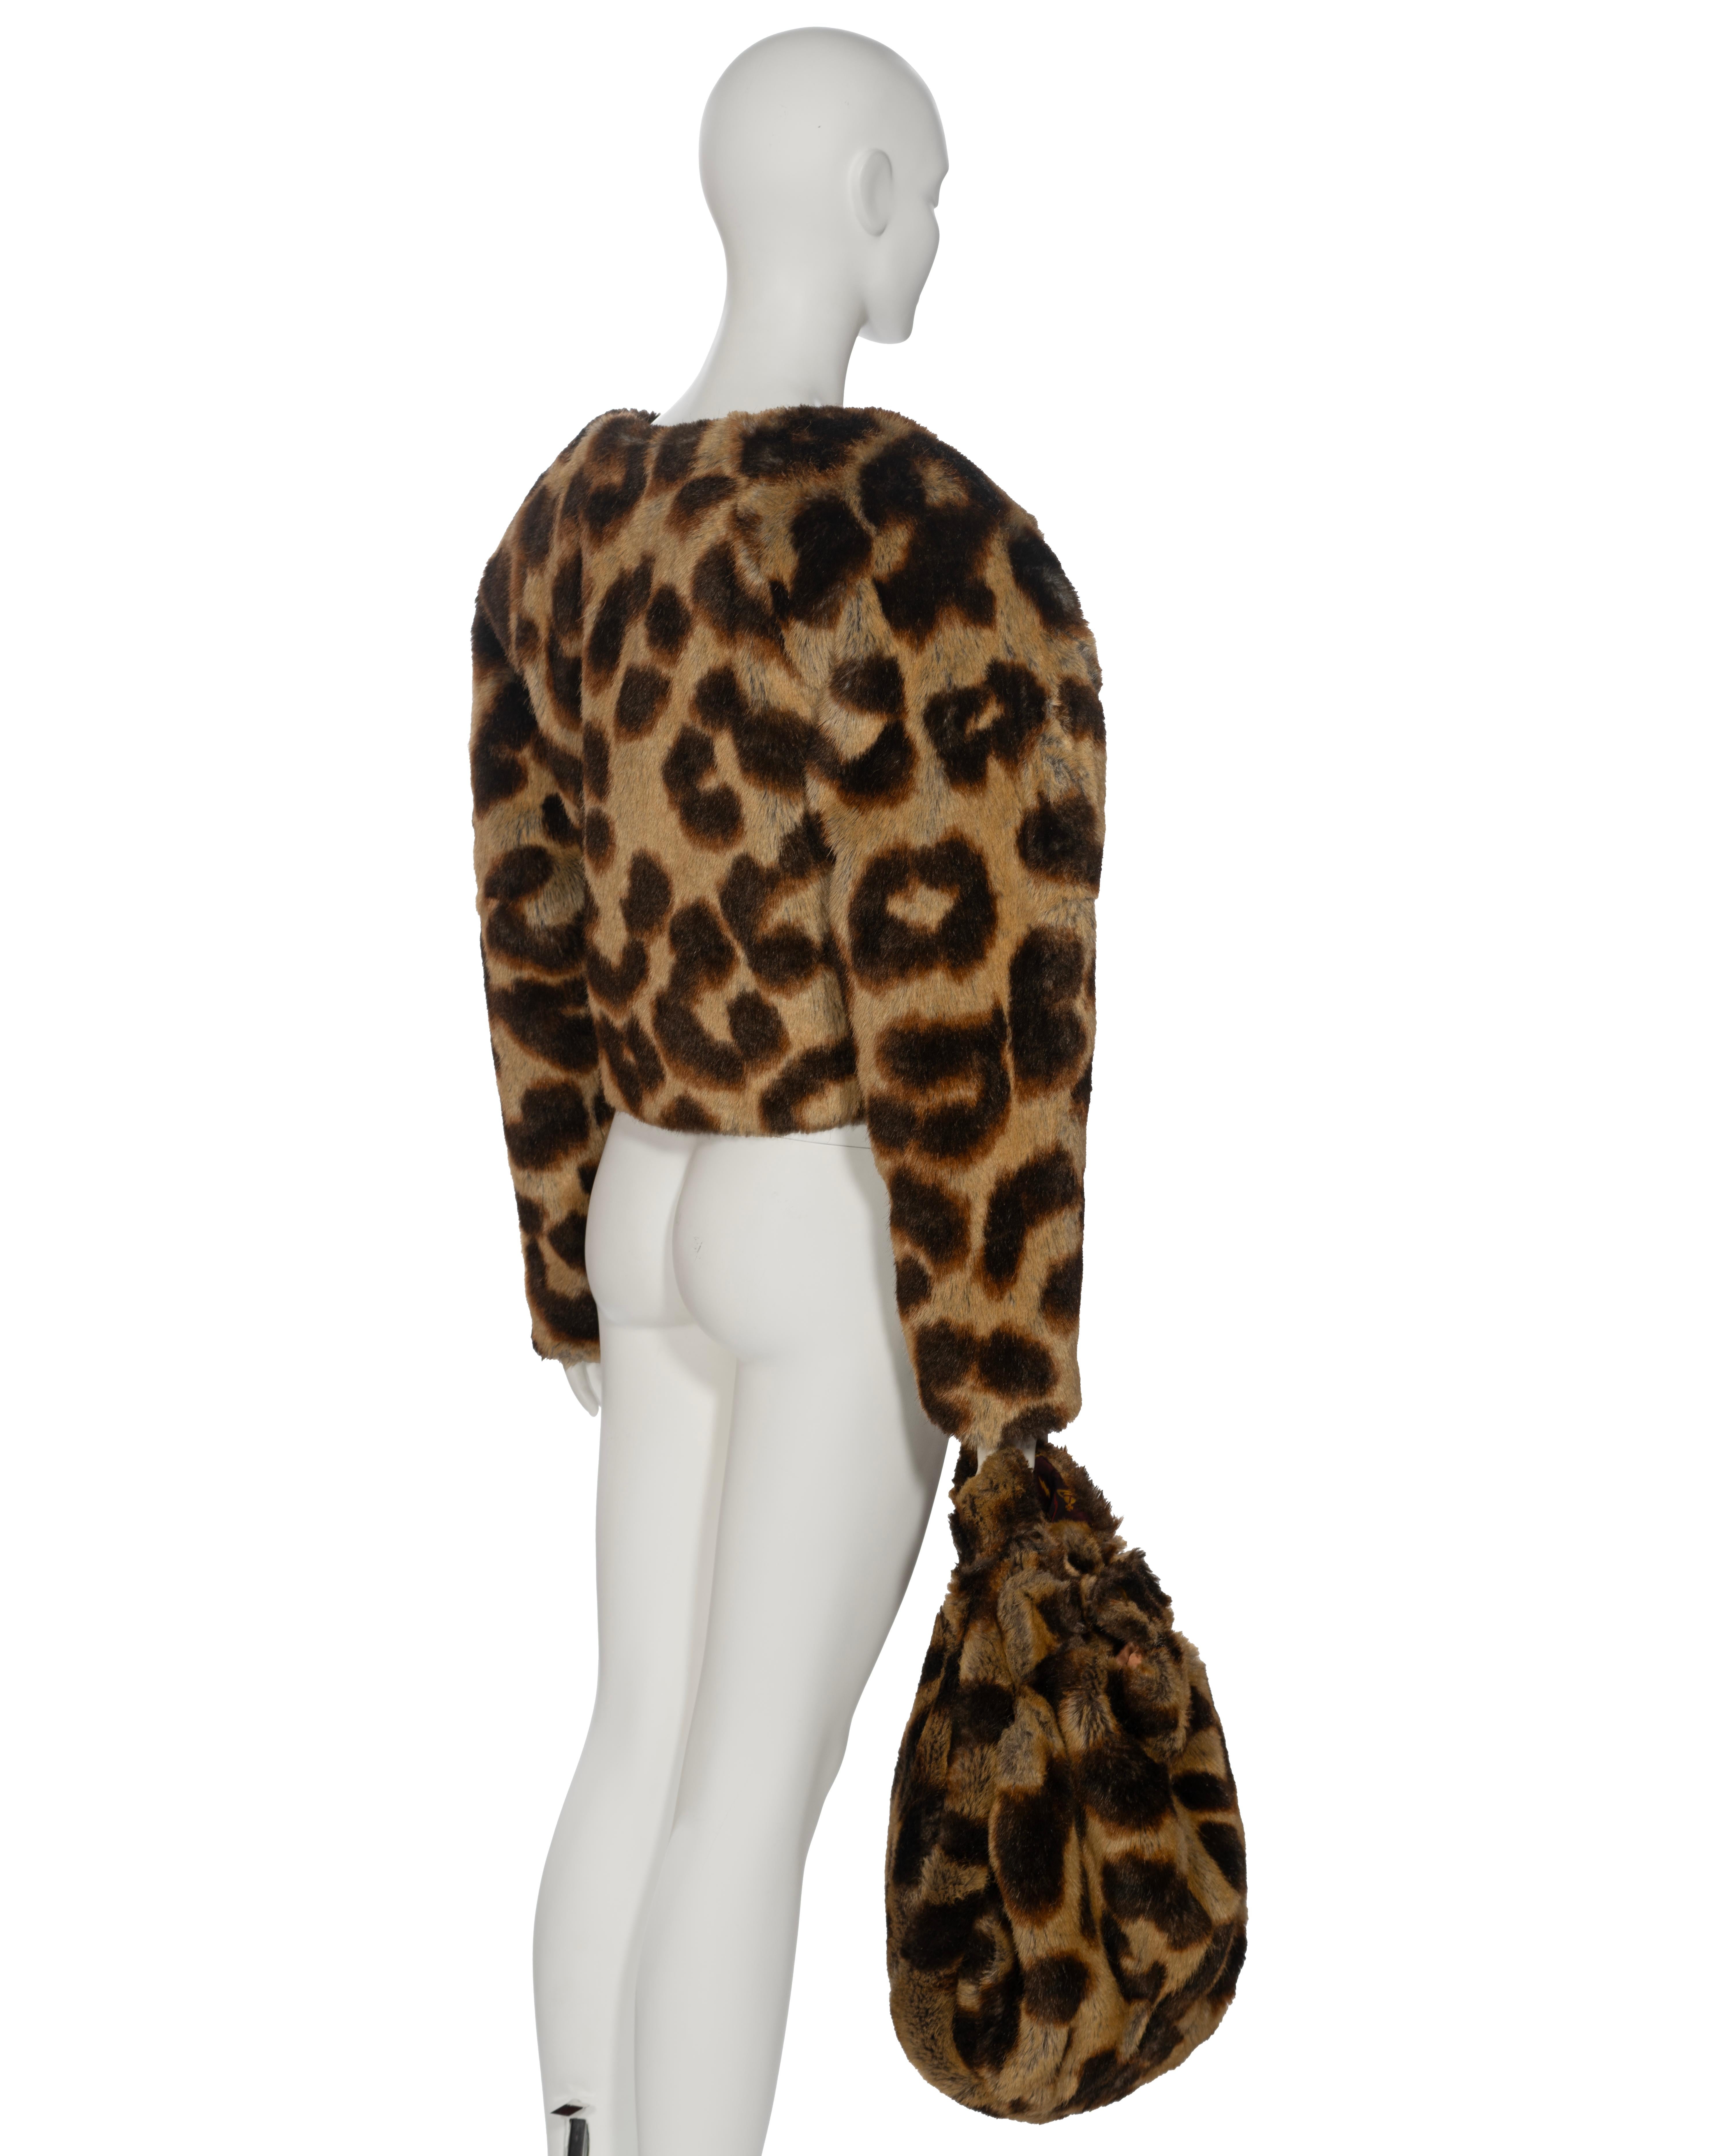 Vivienne Westwood Leopard Print Faux Fur Jacket and Bag Set, fw 1992 3